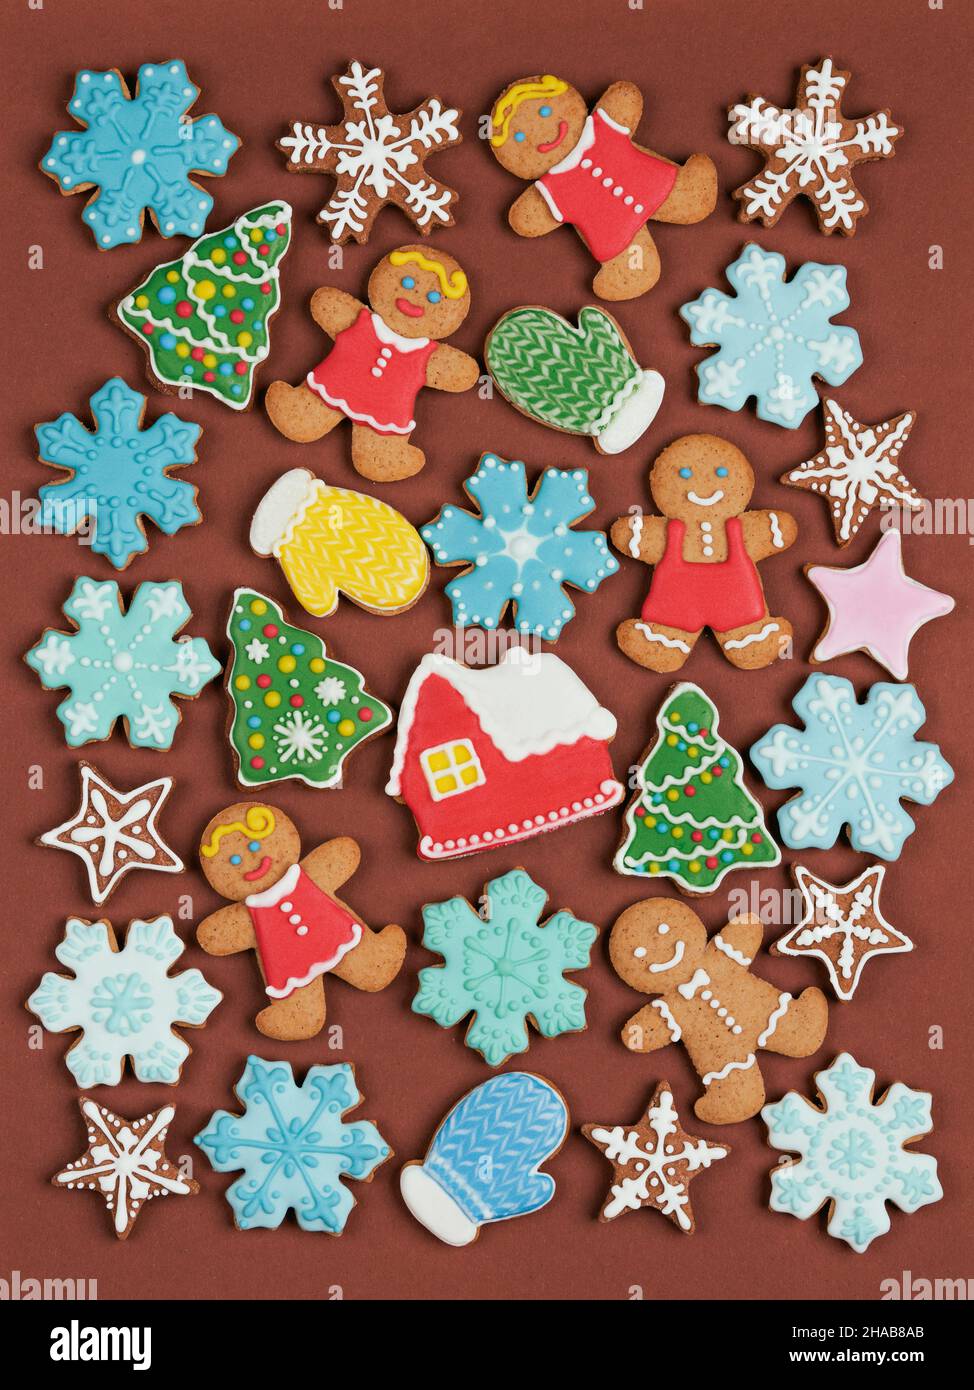 Weihnachtsplätzchen-Set. Isolierte Ingwerkekse mit Dekoration auf farbigem Hintergrund. Süßes und köstliches Urlaubsgeschenk. Ingwer Mann, Weihnachtsbaum, sn Stockfoto